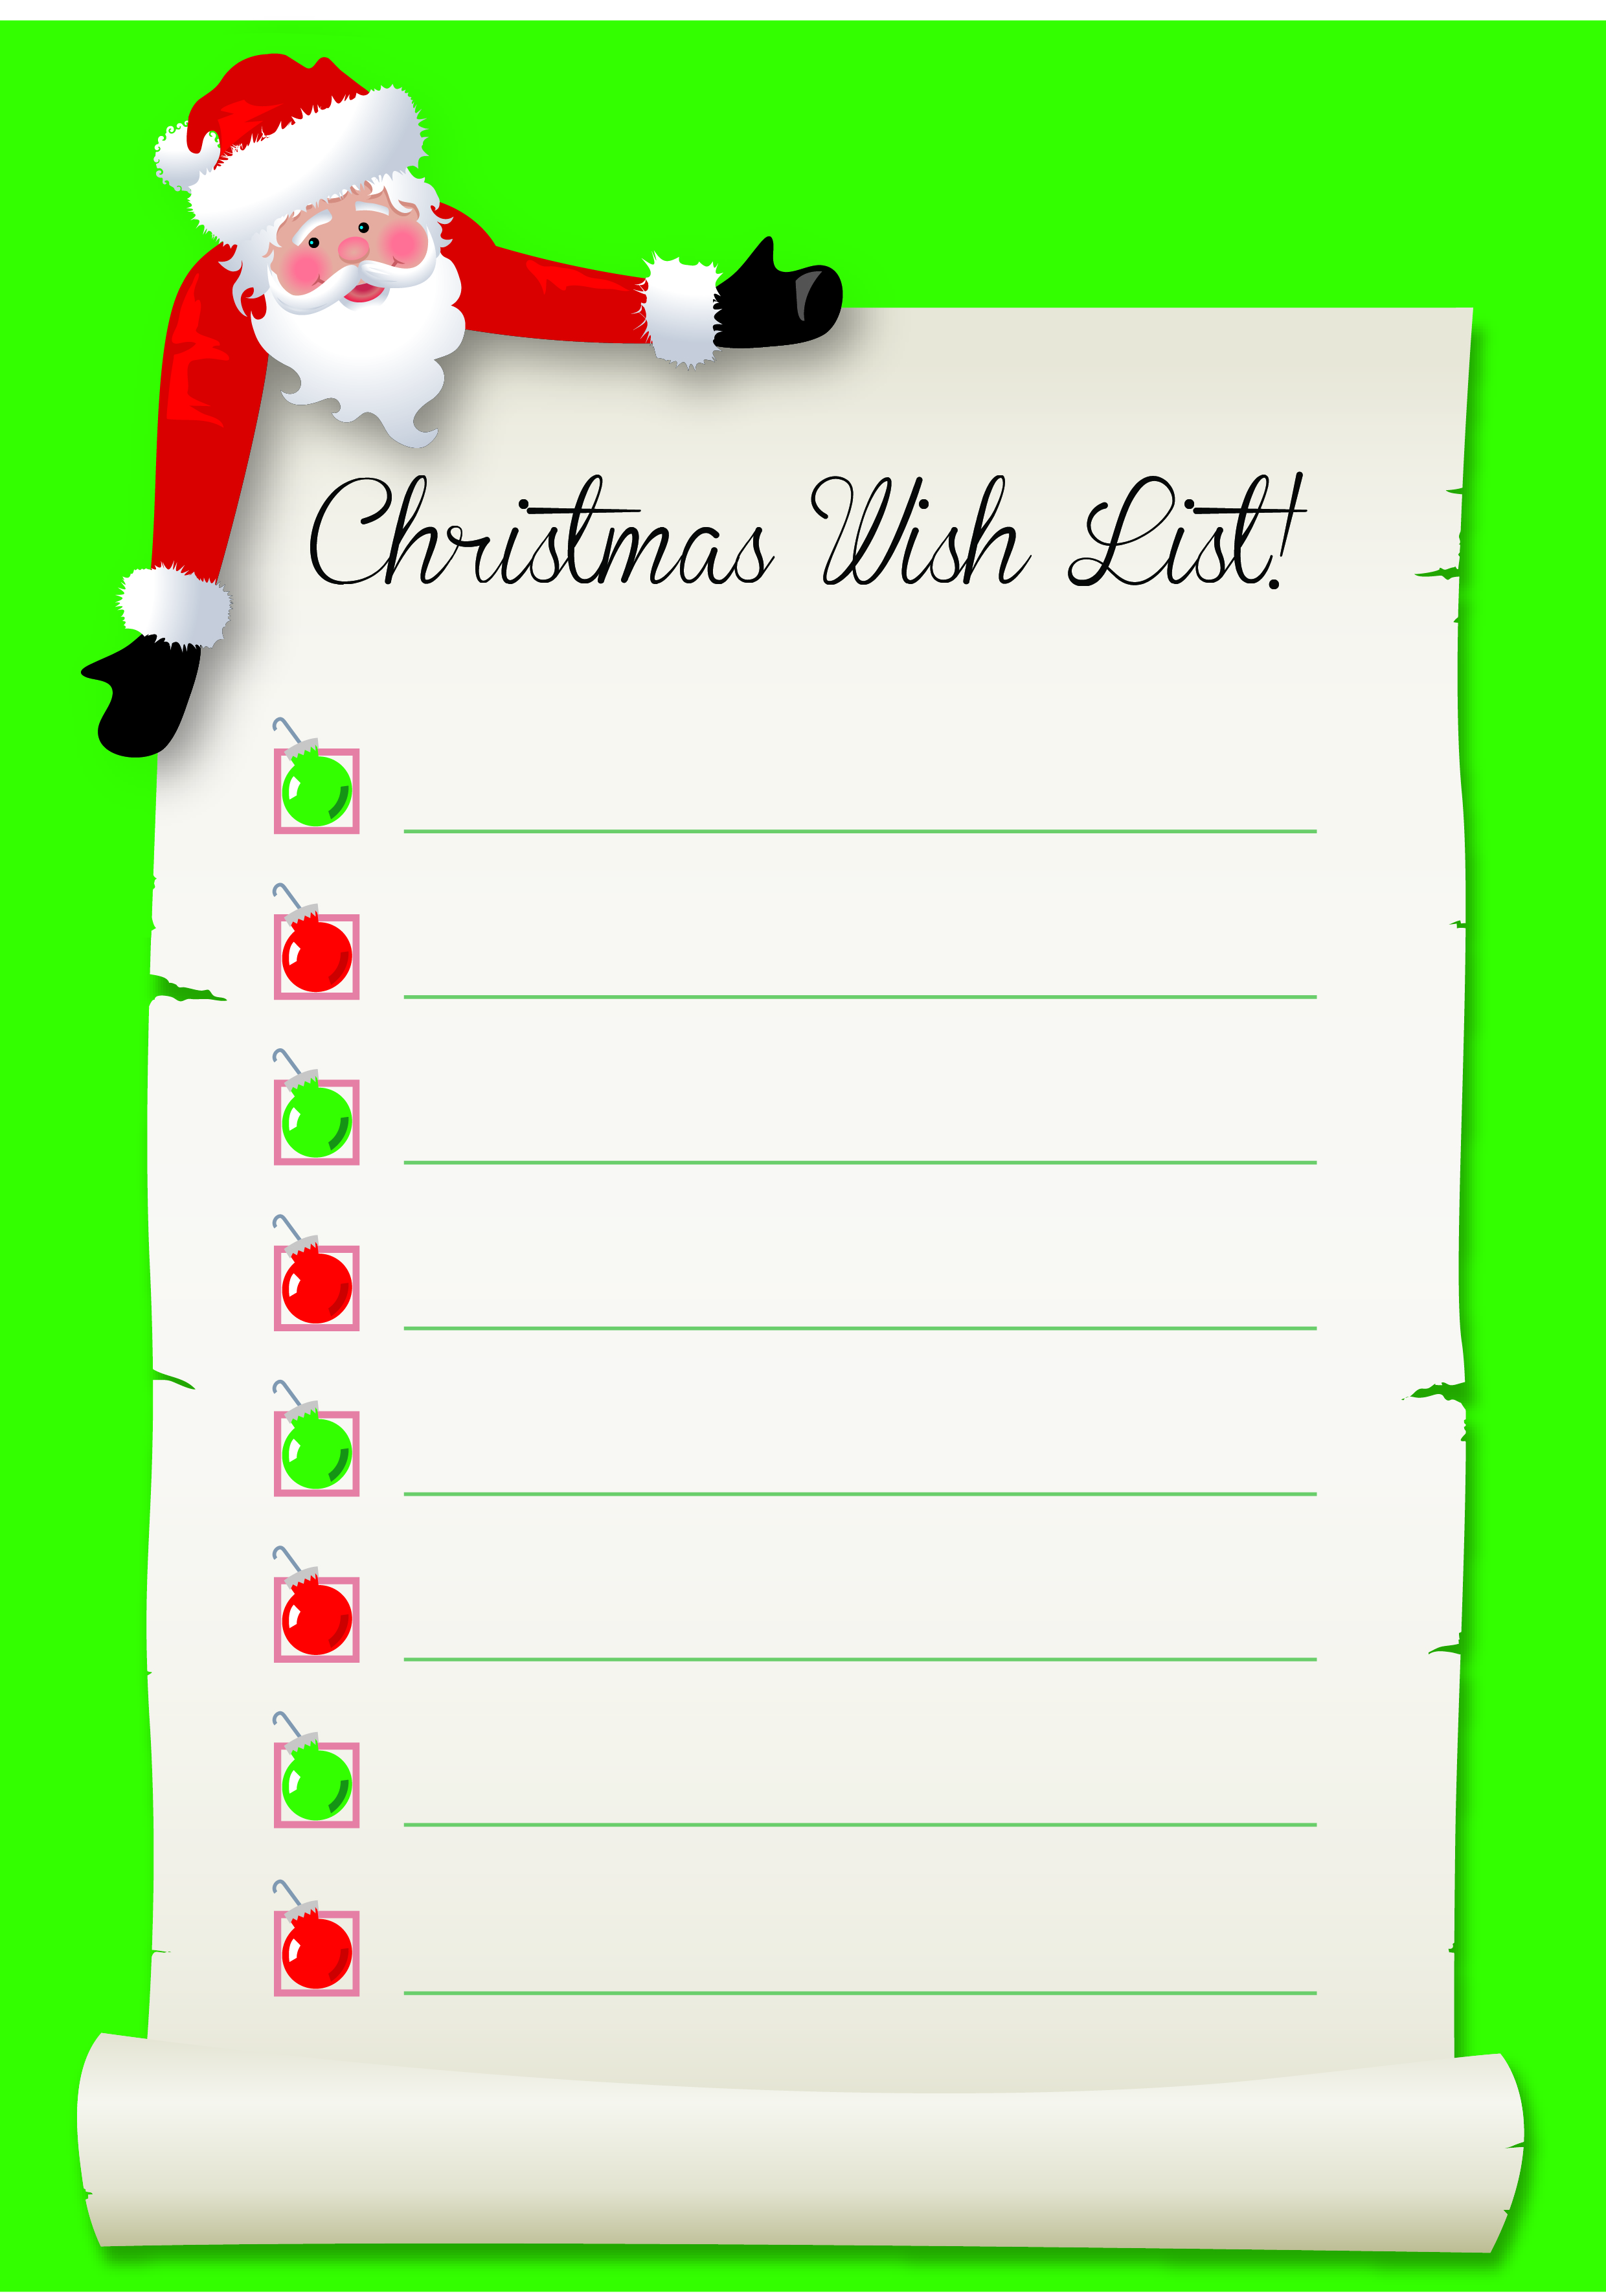 Santa's Wish List free download SchoolStickers